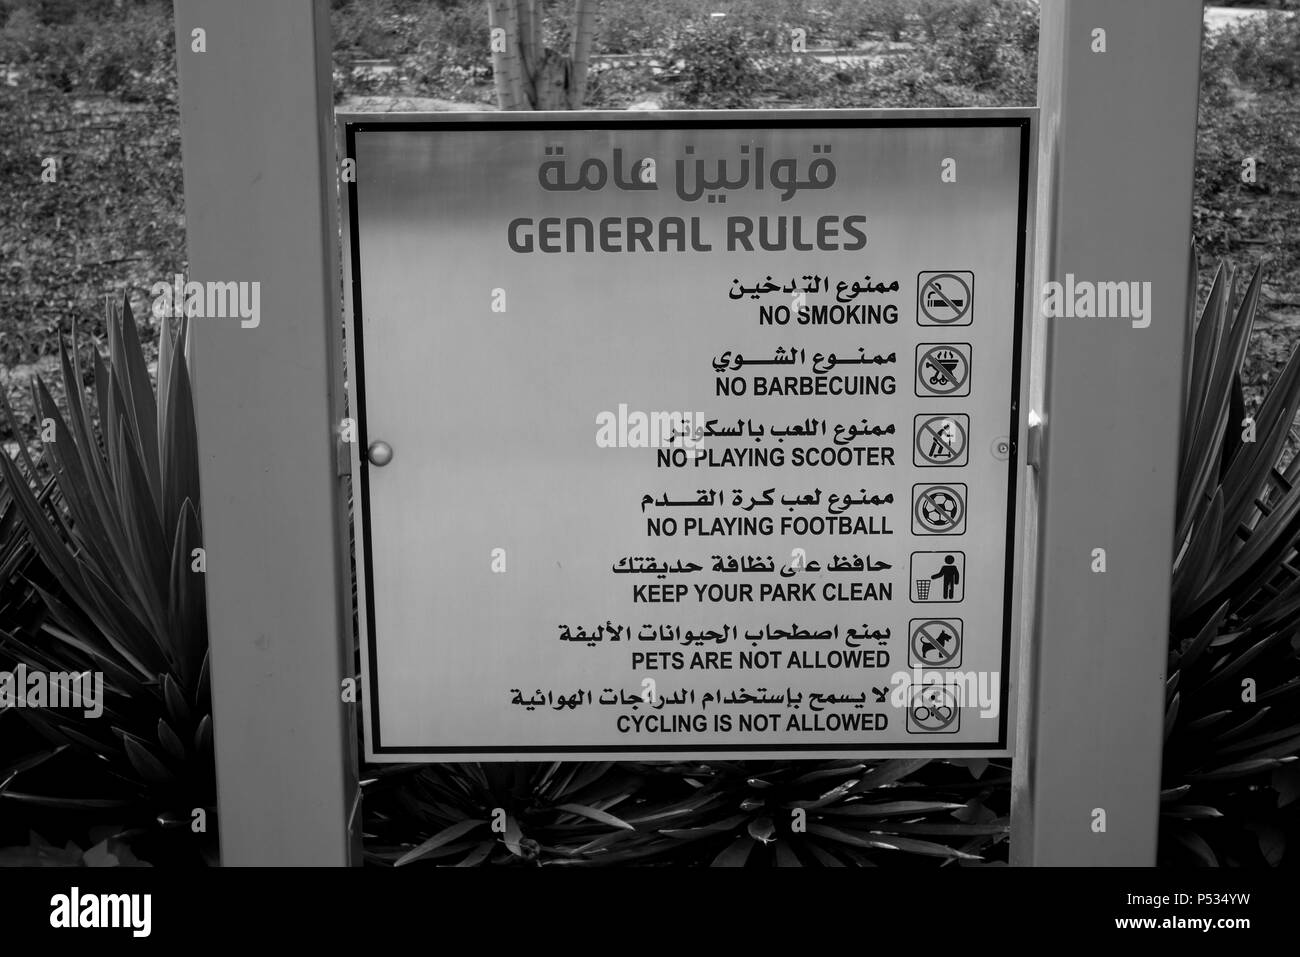 Elenco di Park regole e regolamenti in Inglese ed Arabo visualizzati in un parco pubblico, Kuwait City, Kuwait, Golfo Arabico, Medio Oriente Foto Stock